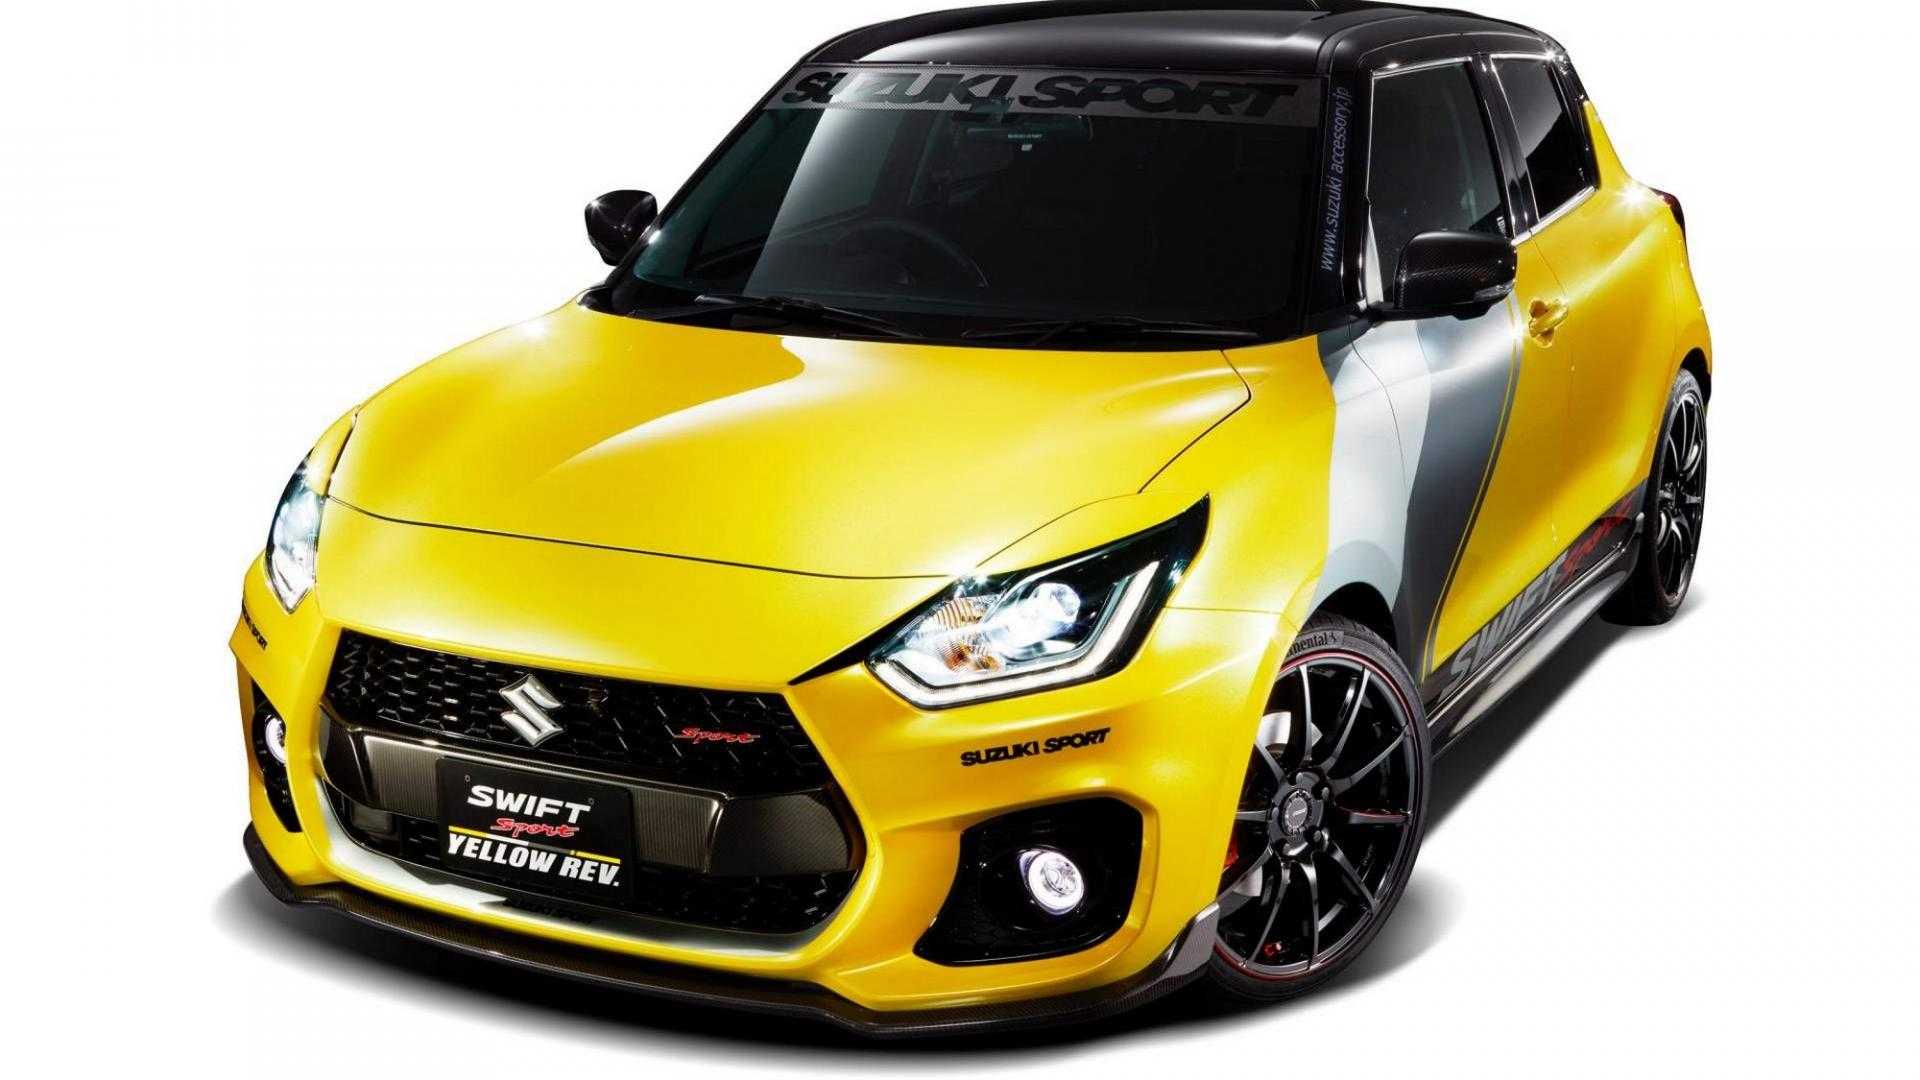 Suzuki Swift Sport Yellow Rev